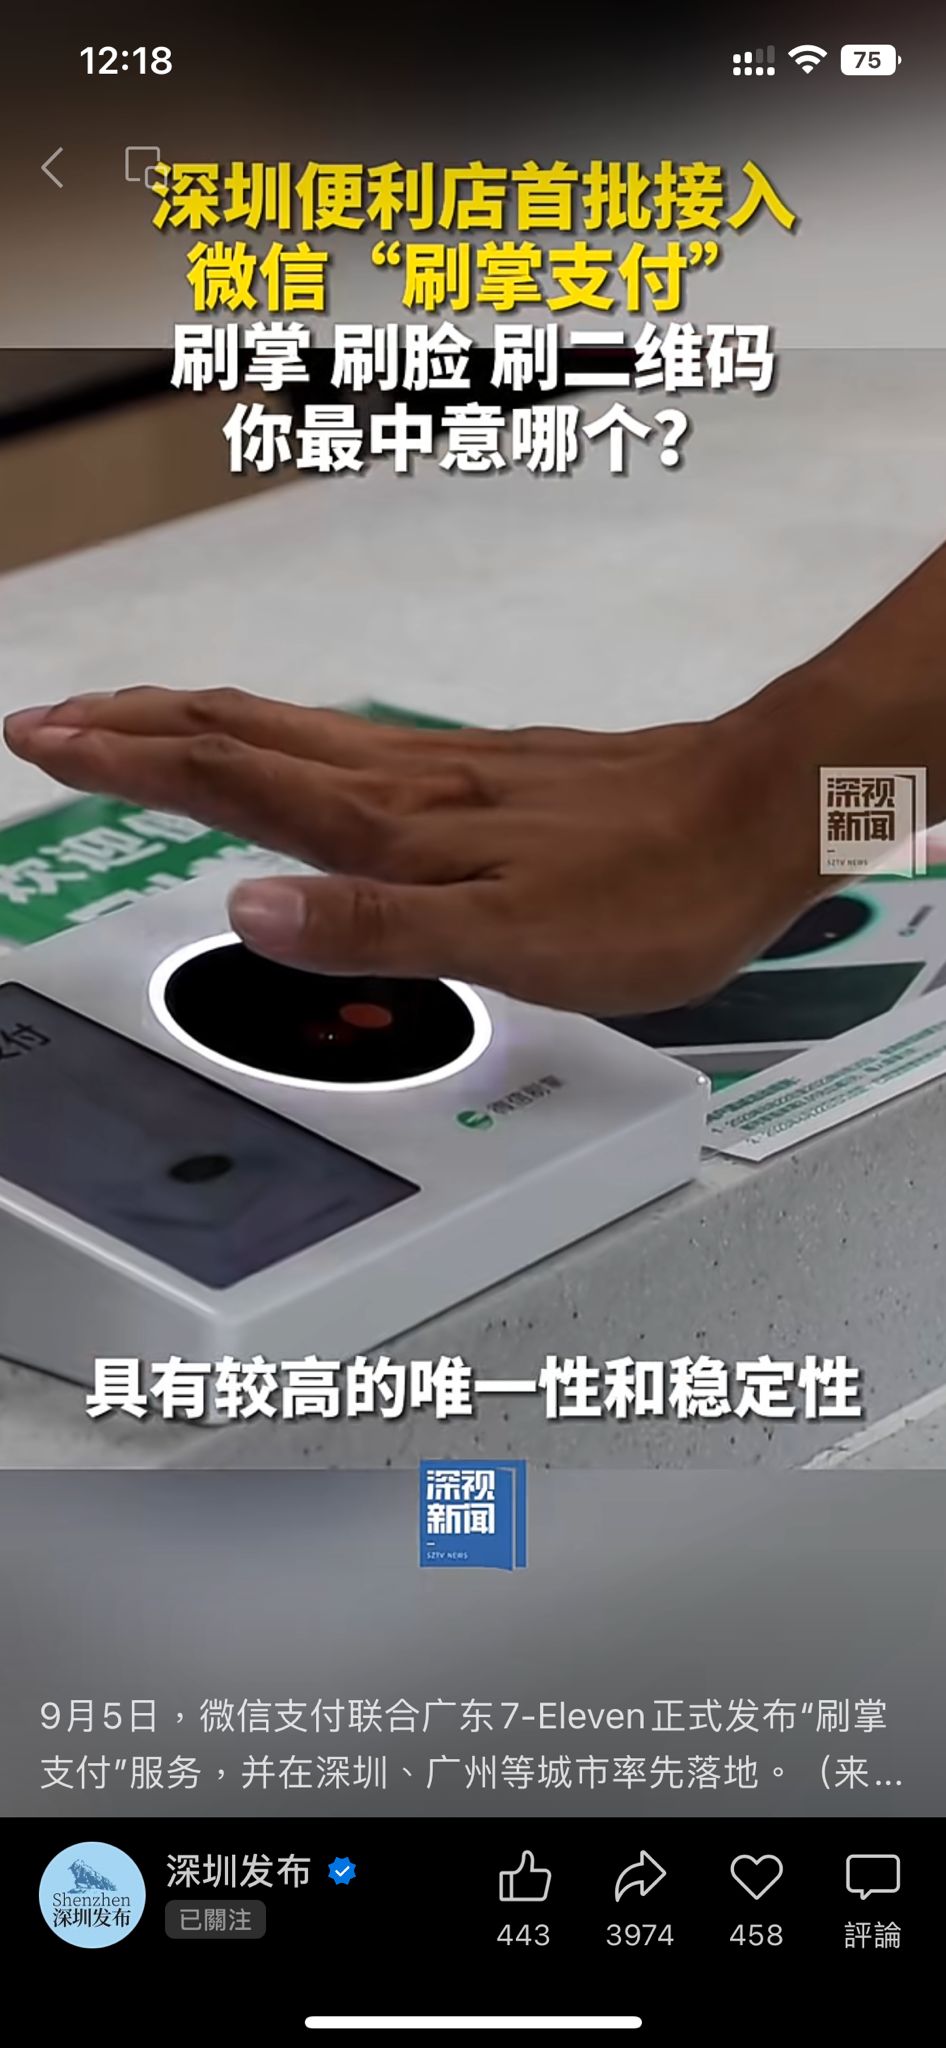 只要用家伸手在掃描器上隔空掃描掌紋。（圖片來源：微信@深圳發佈）